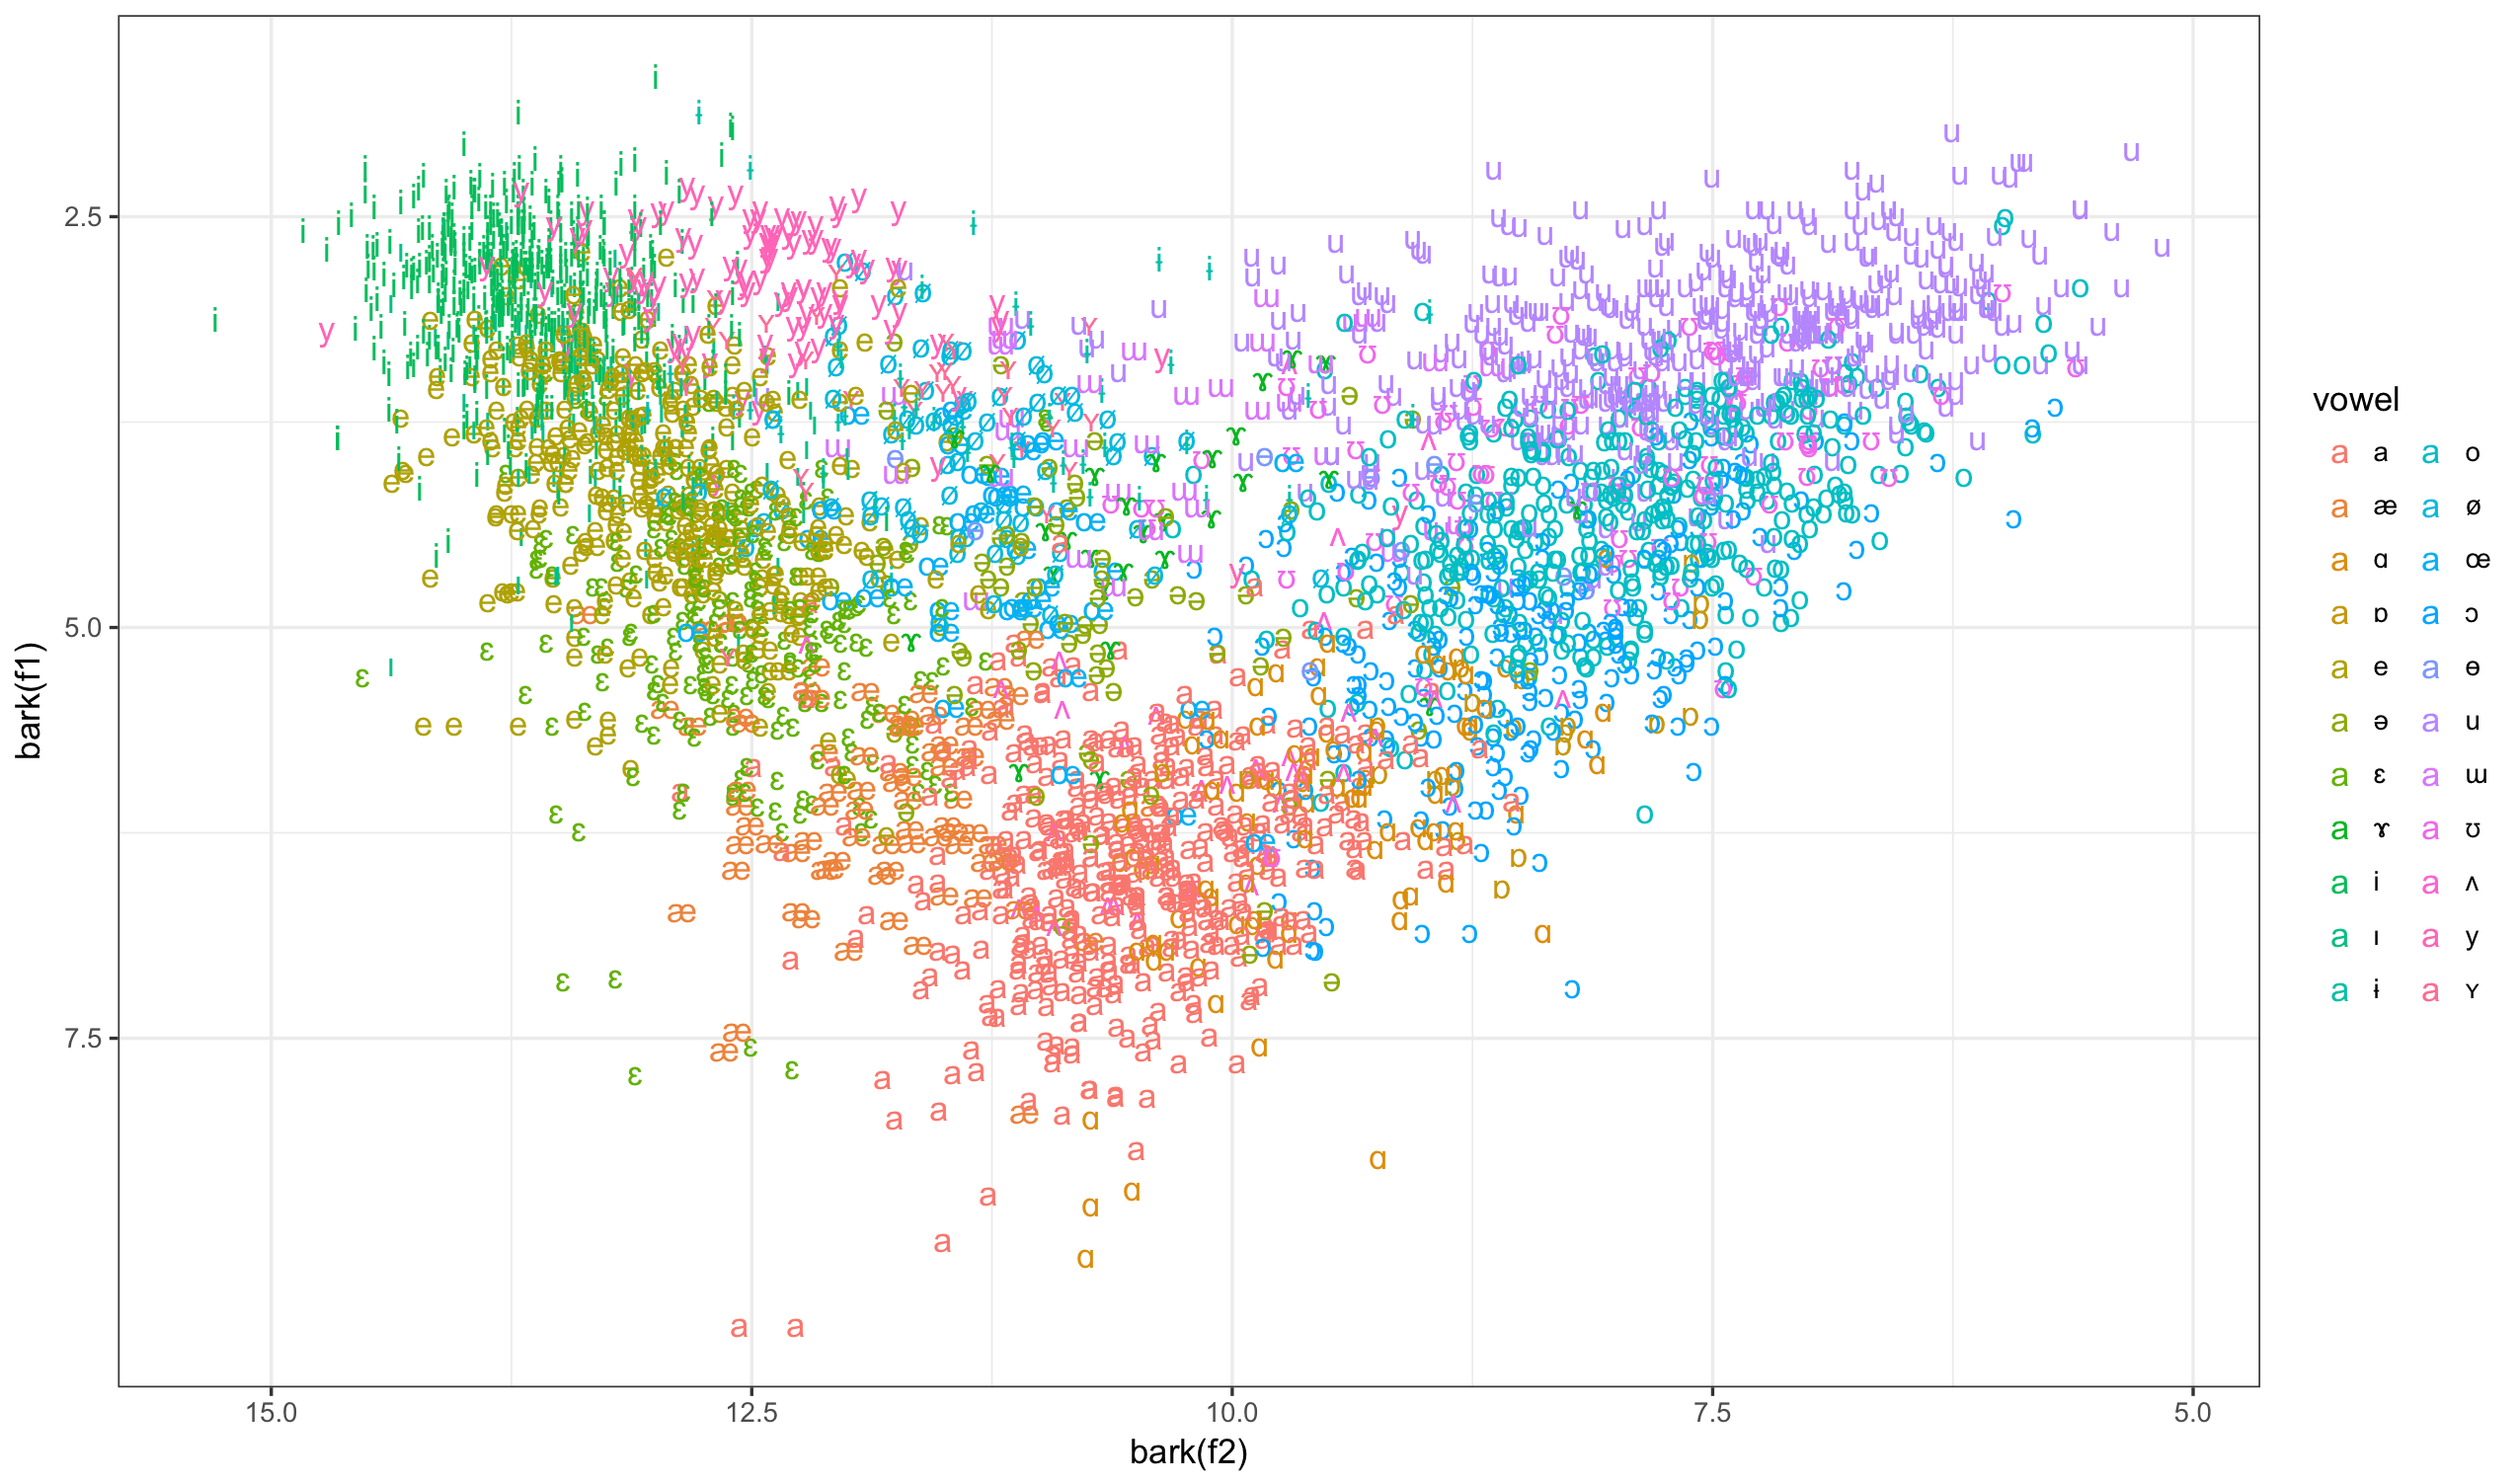 Formant plot of Becker's vowel data